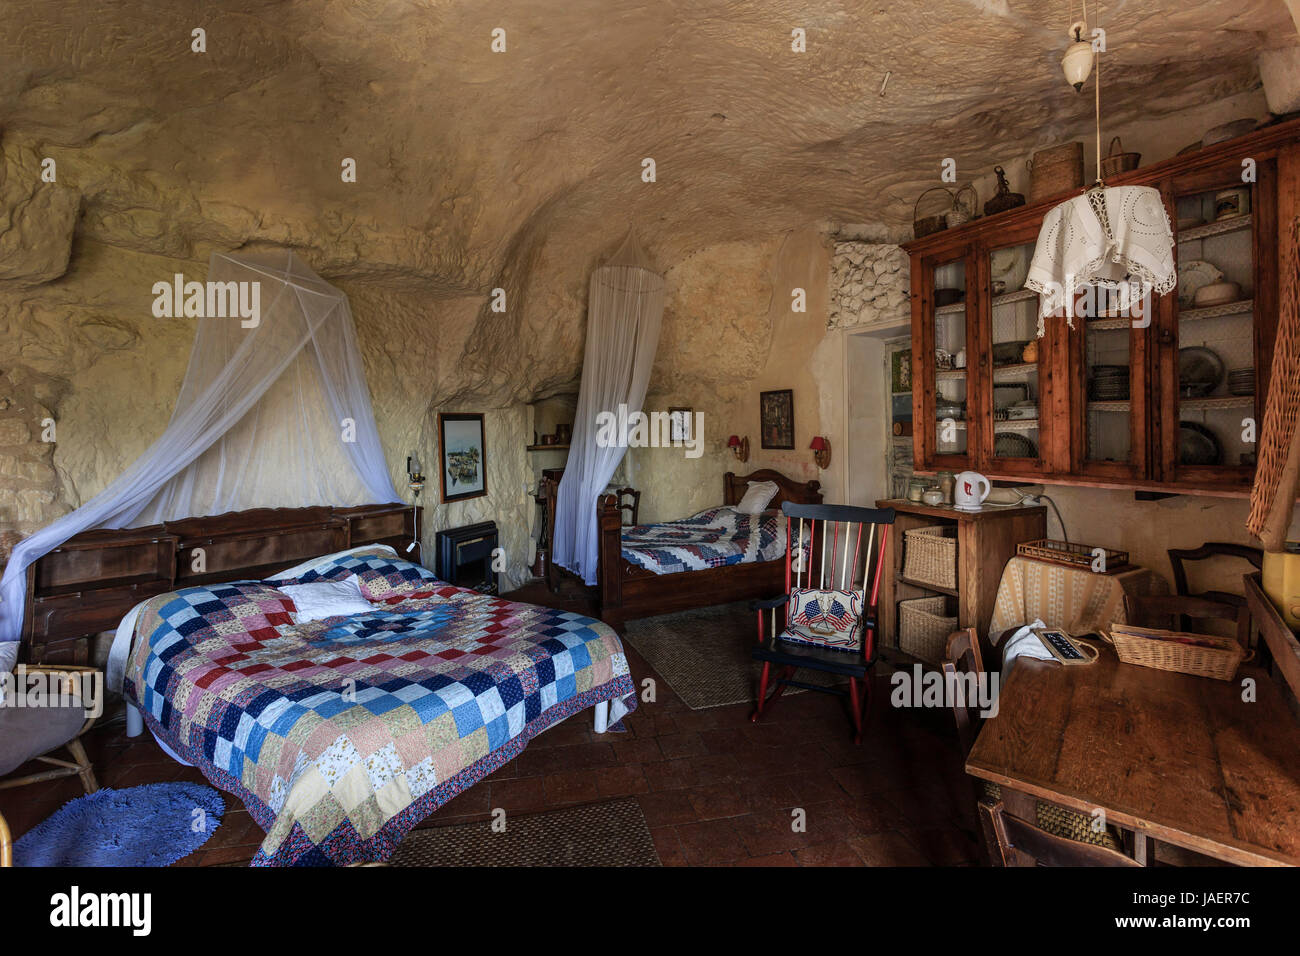 France, Loir et Cher, troo, l'Escale Saint Gabriel, cave house making guest room, the room Stock Photo